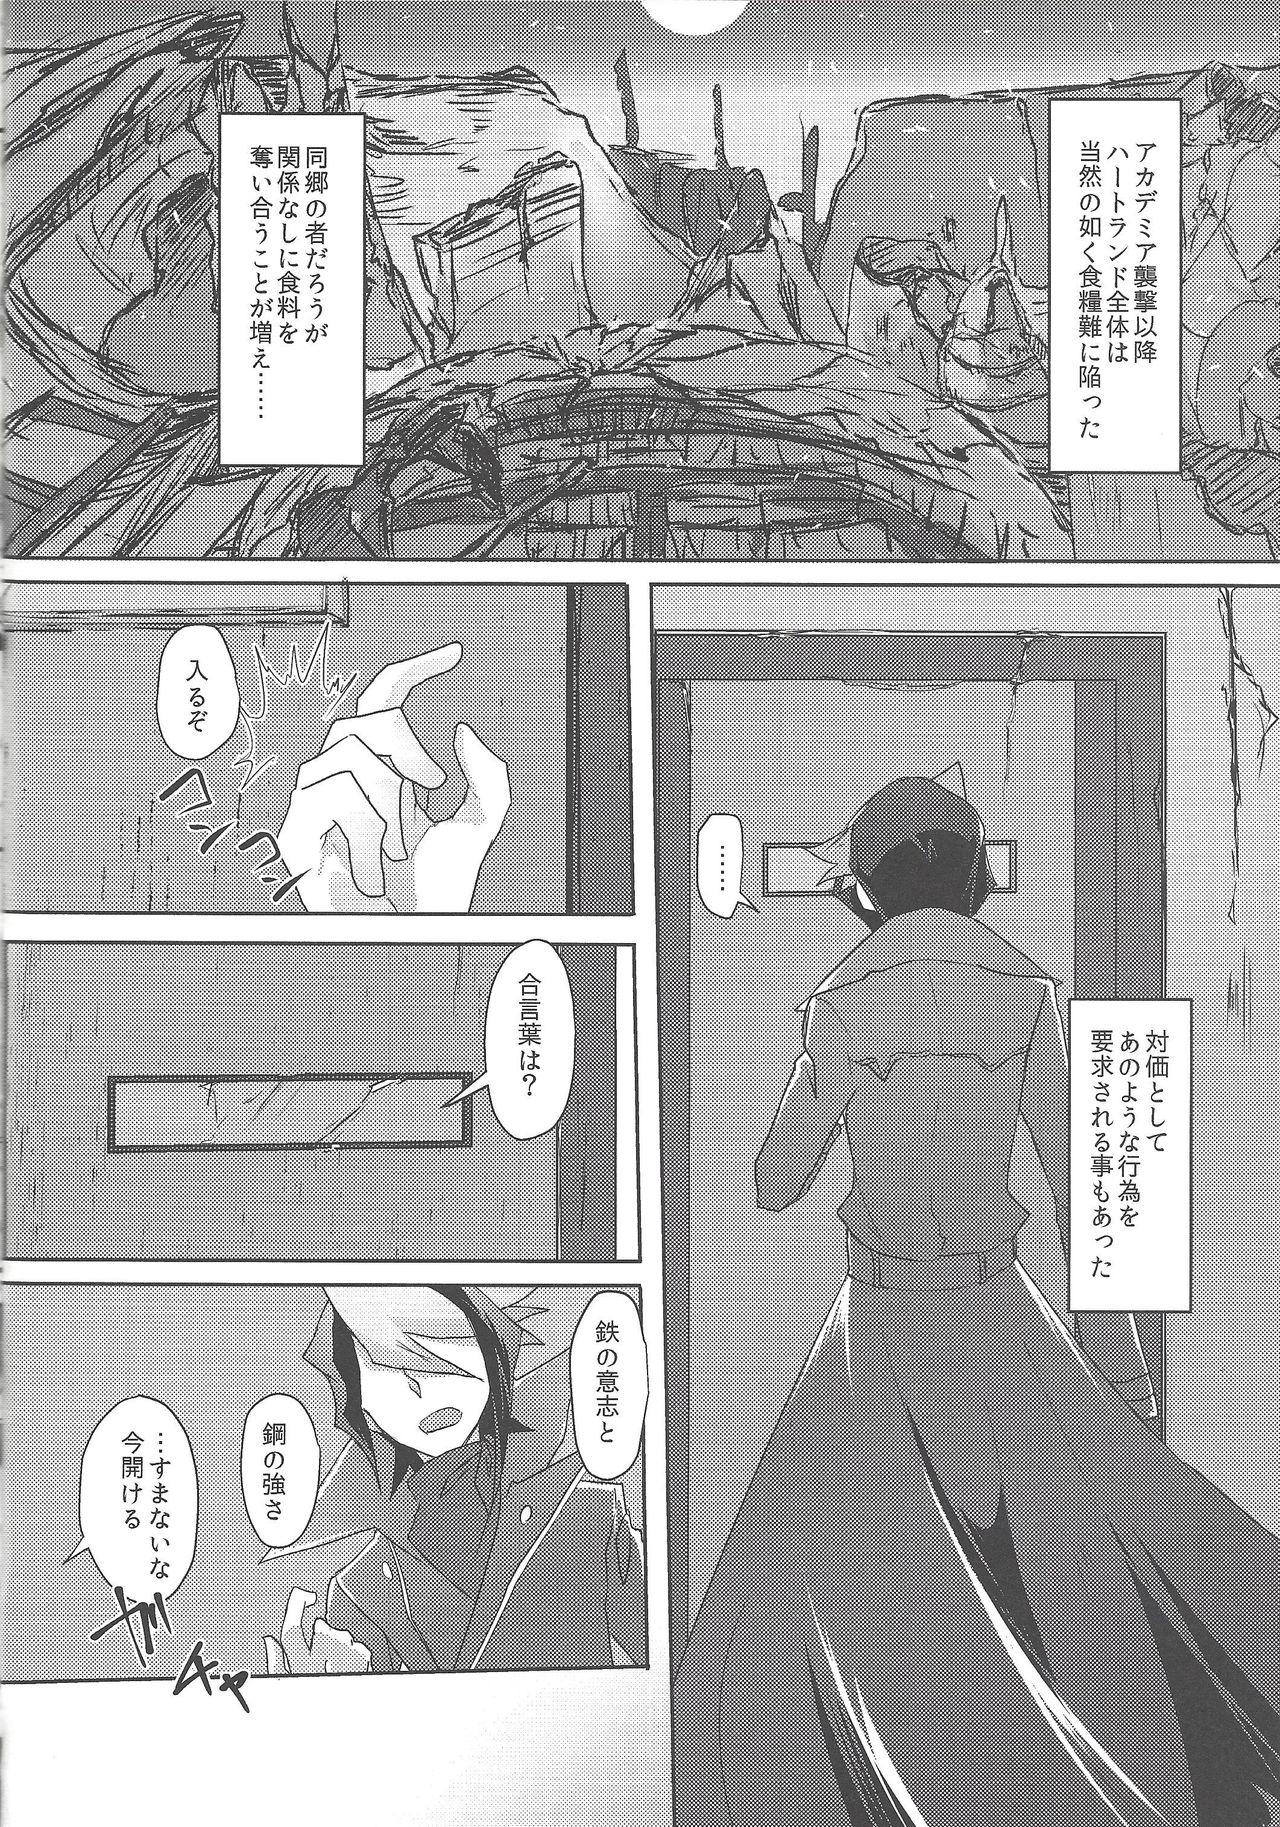 Nut Kimi to kokoro no risōkyō - Yu-gi-oh arc-v Skirt - Page 5